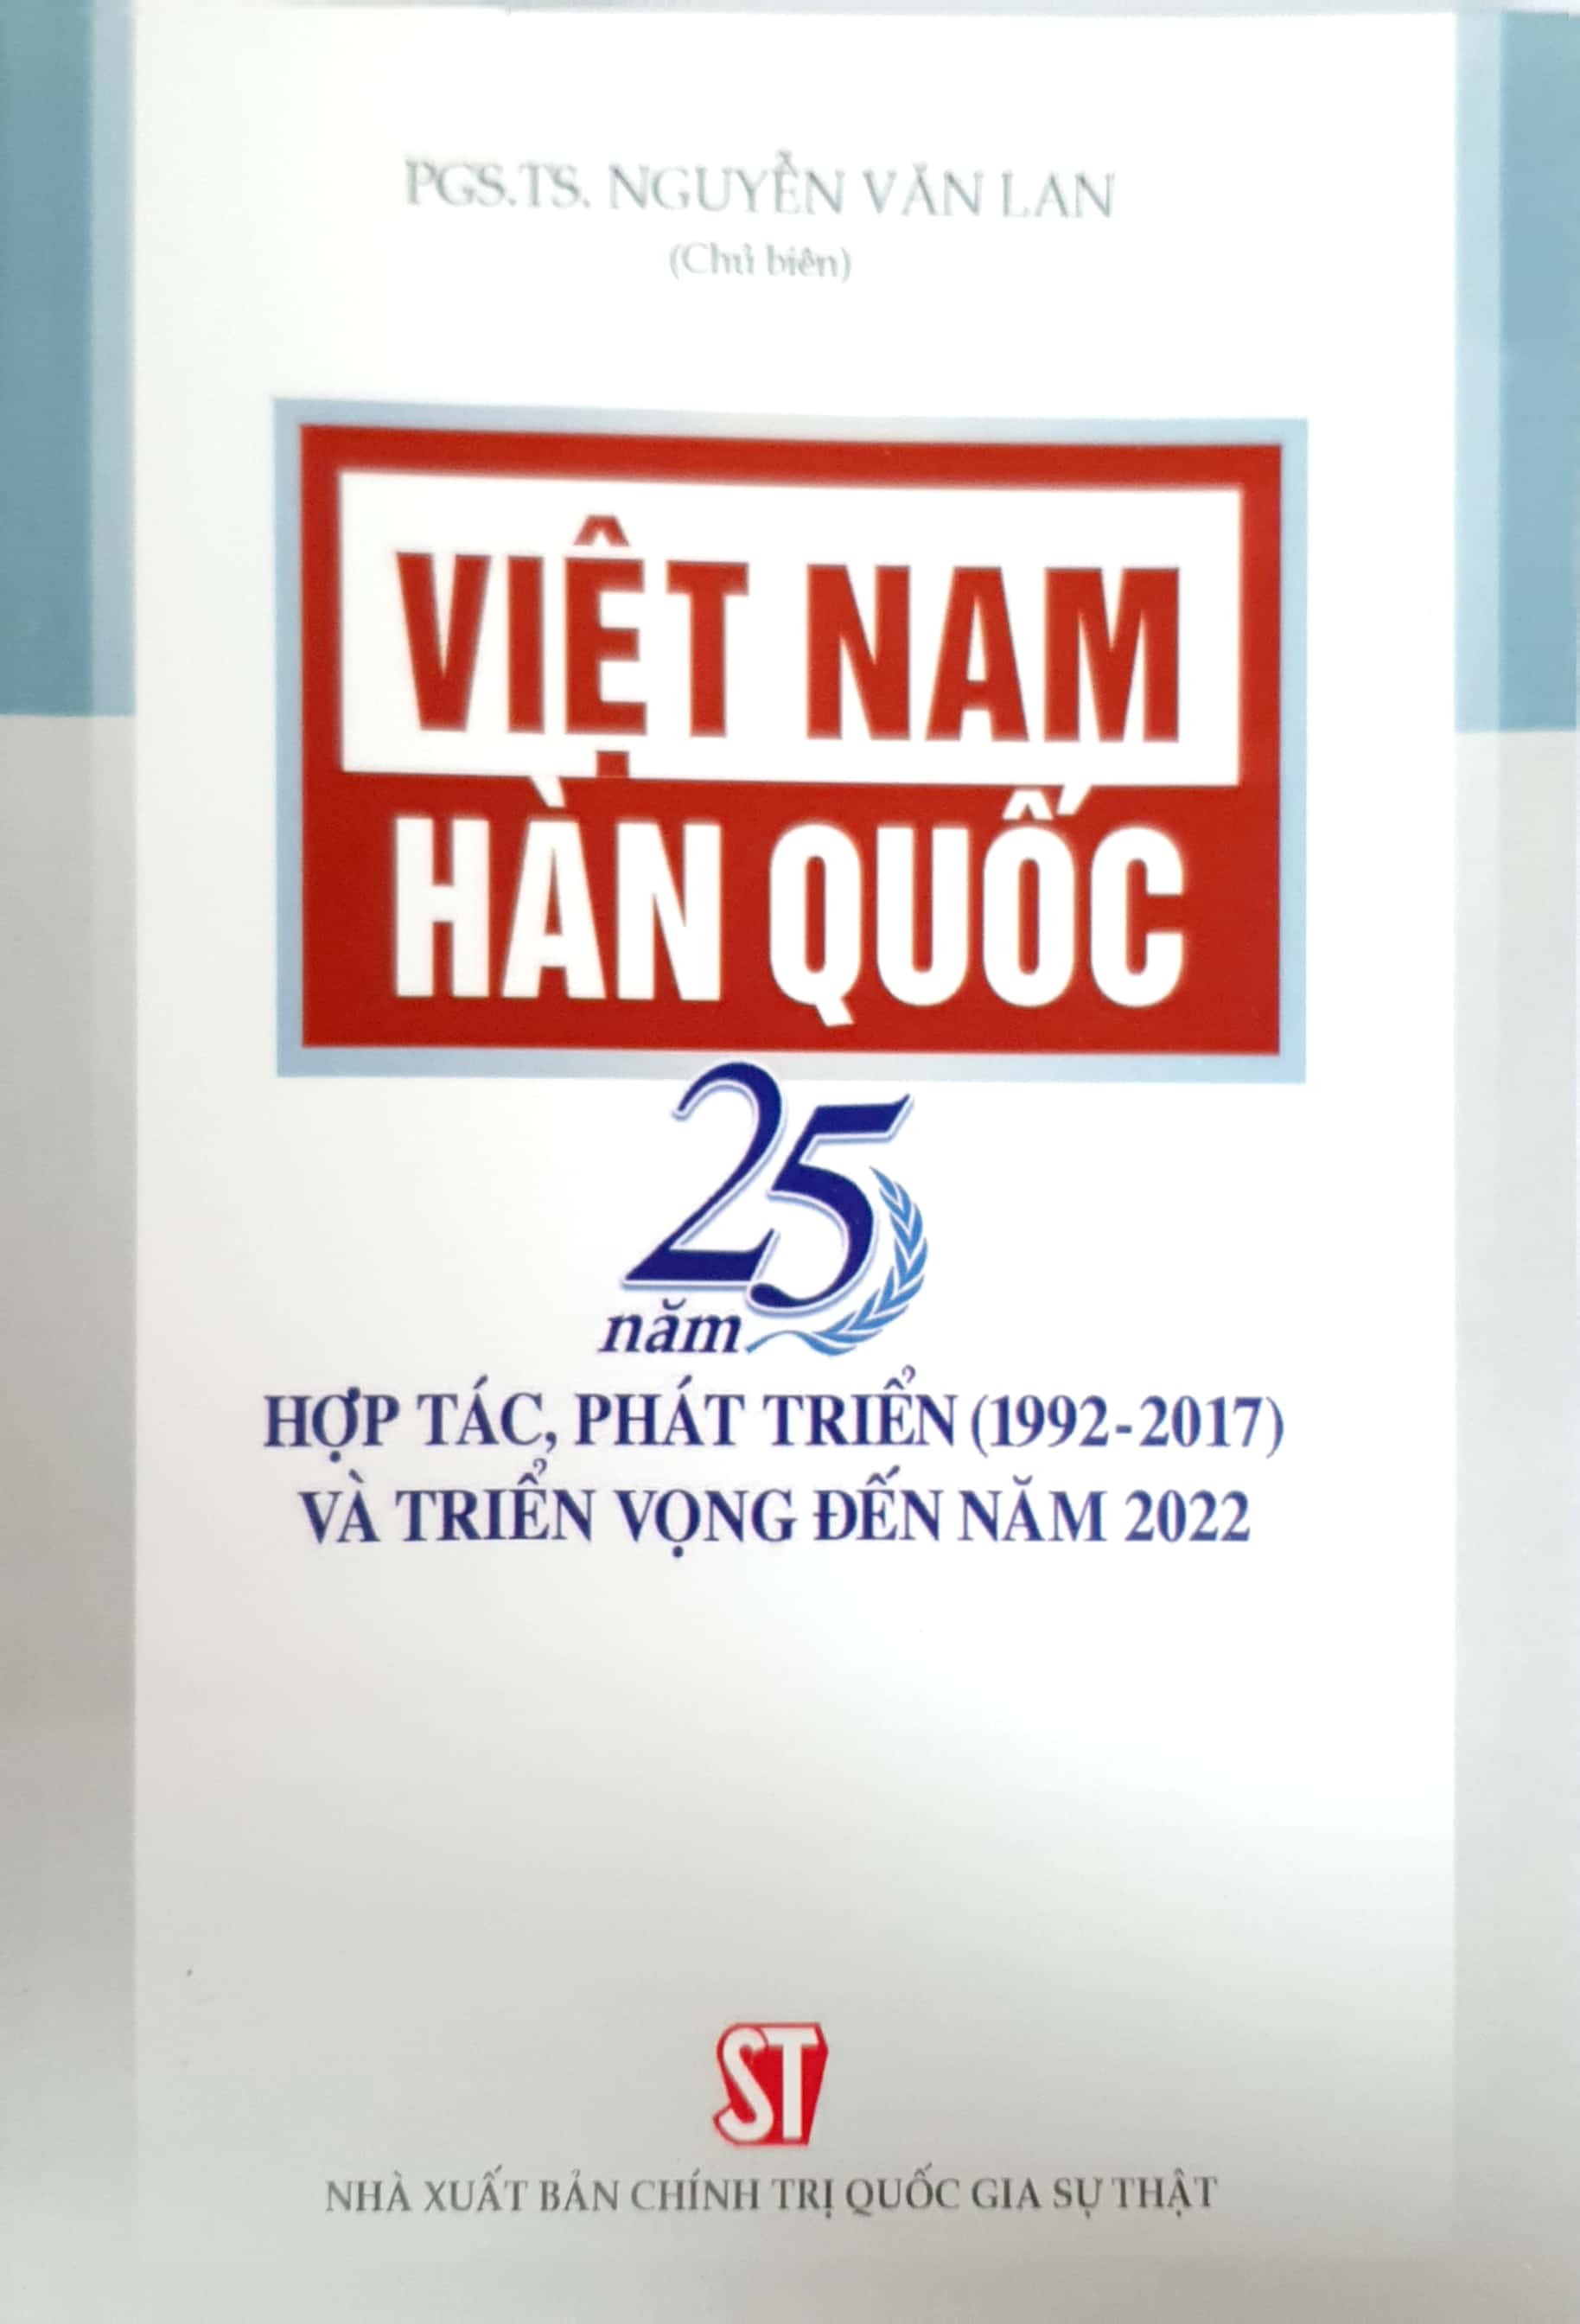 Việt Nam - Hàn Quốc: 25 năm hợp tác, phát triển (1992 - 2017) và triển vọng đến năm 2022